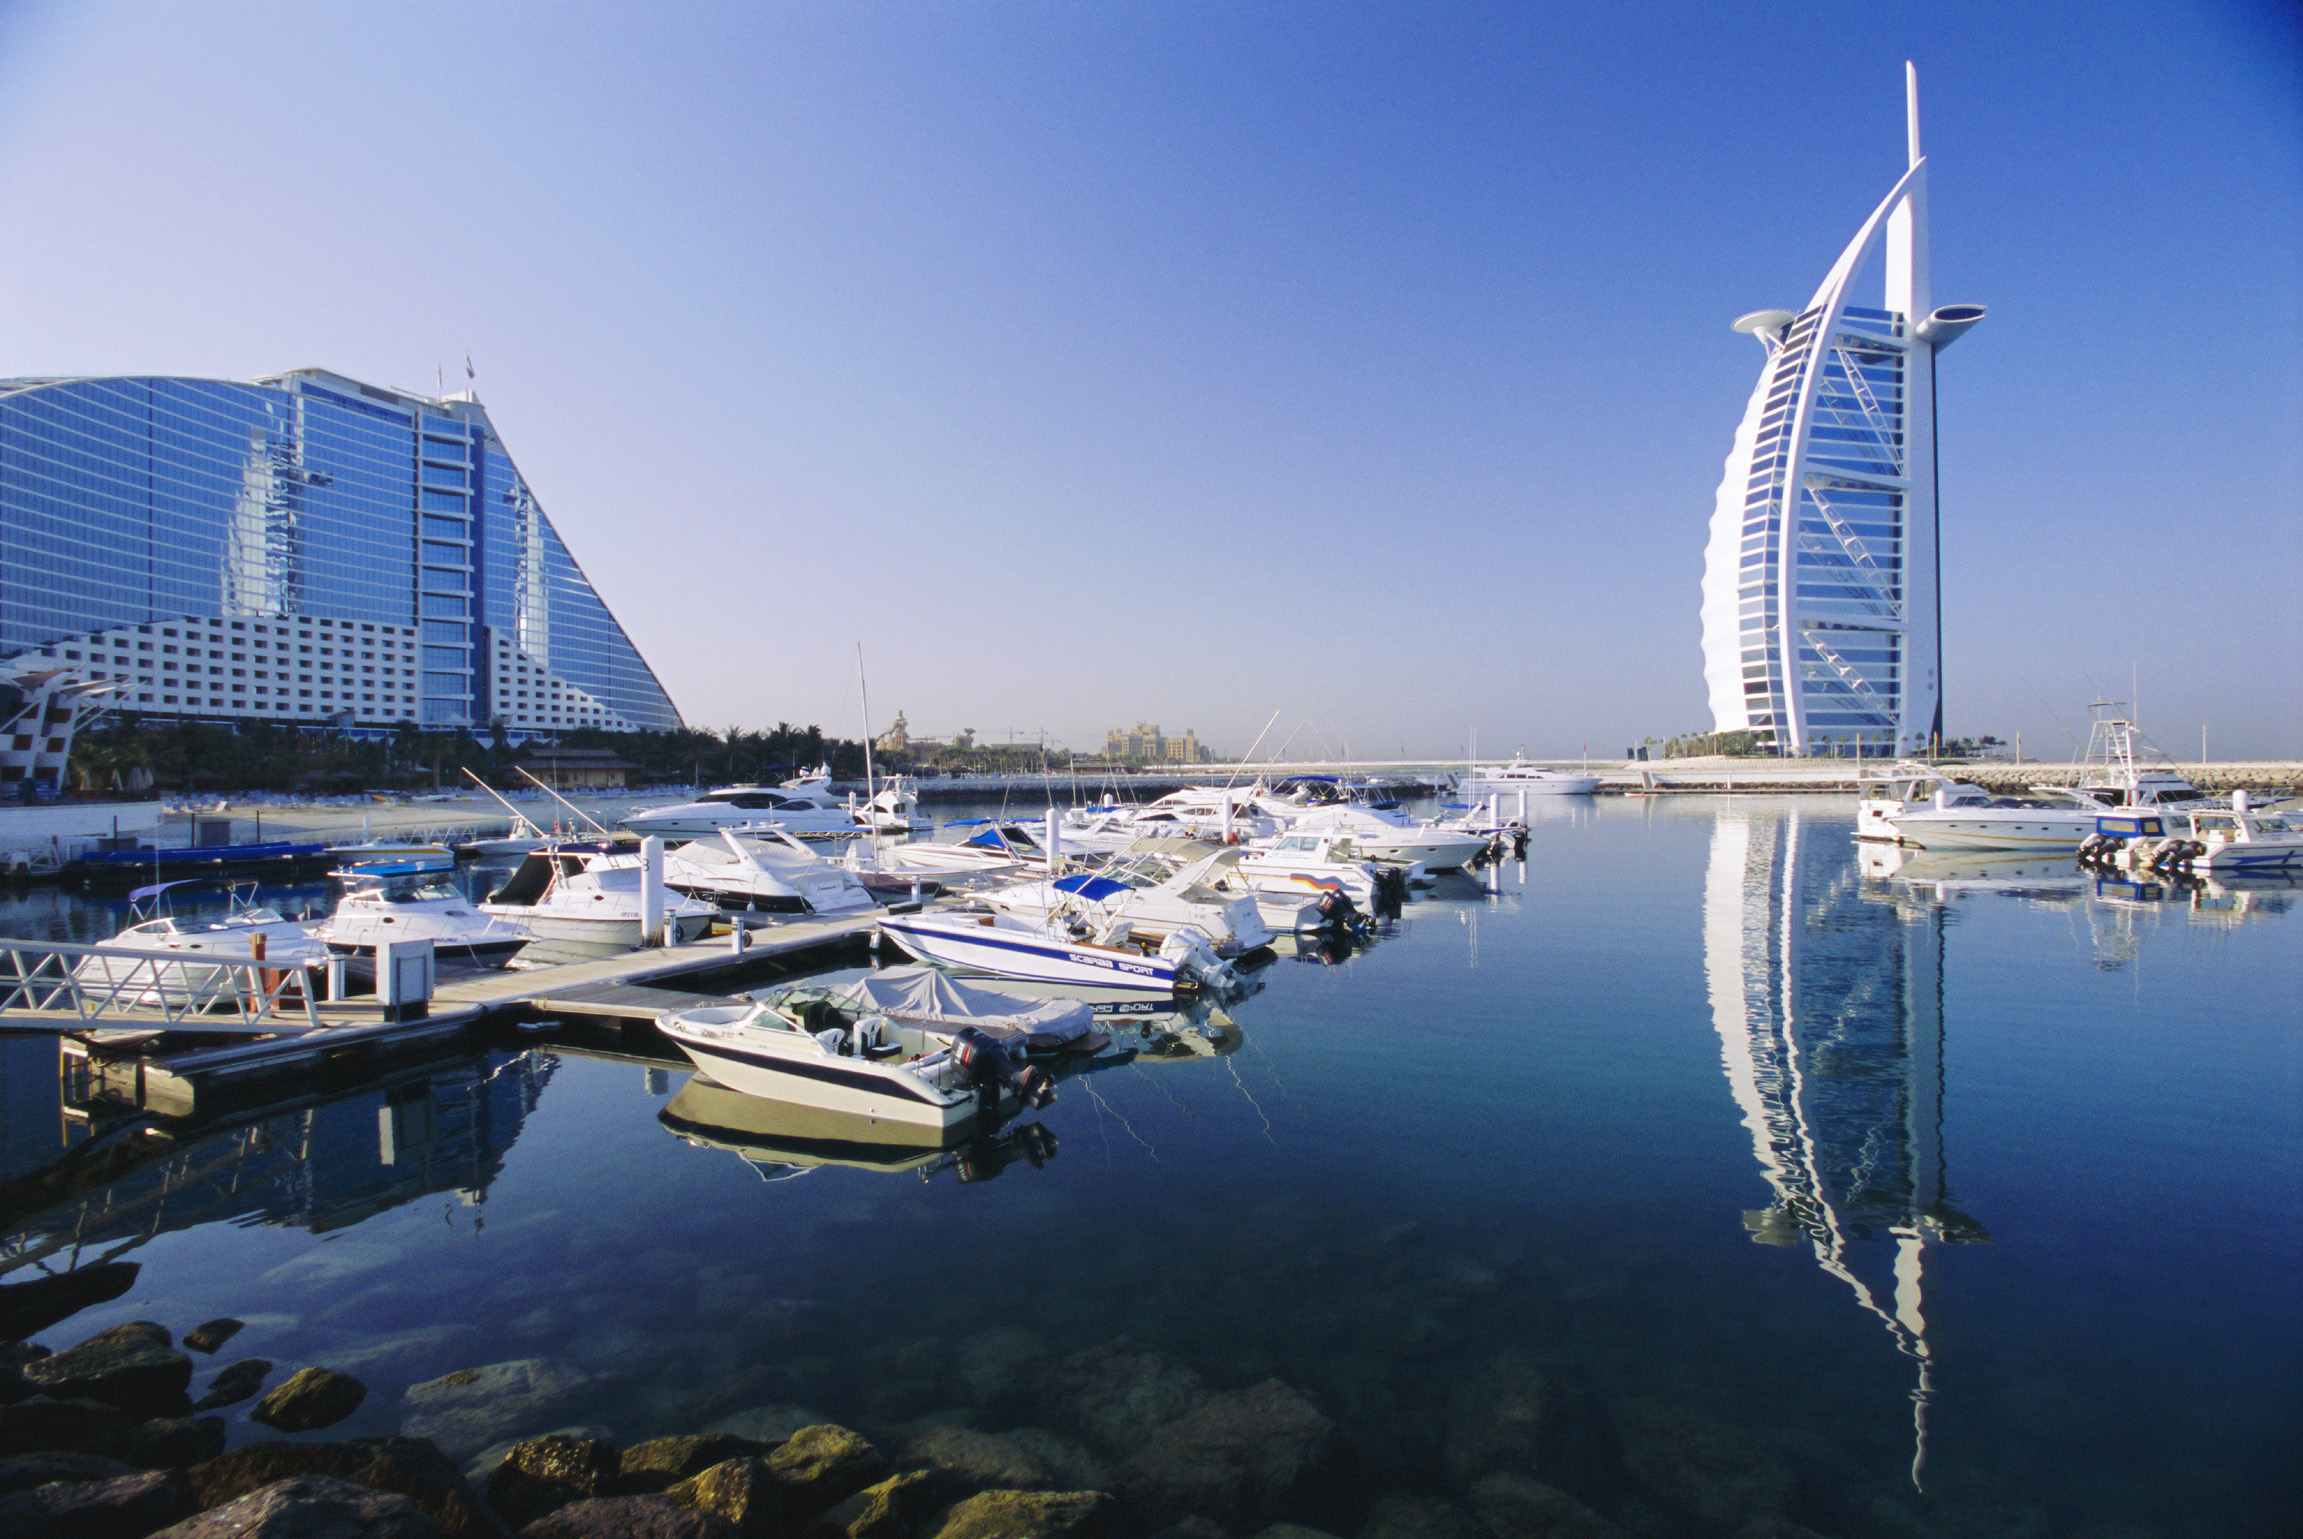 七星级酒店是迪拜的标志性象征,吸引世界人们的敬仰,其中帆船酒店具有